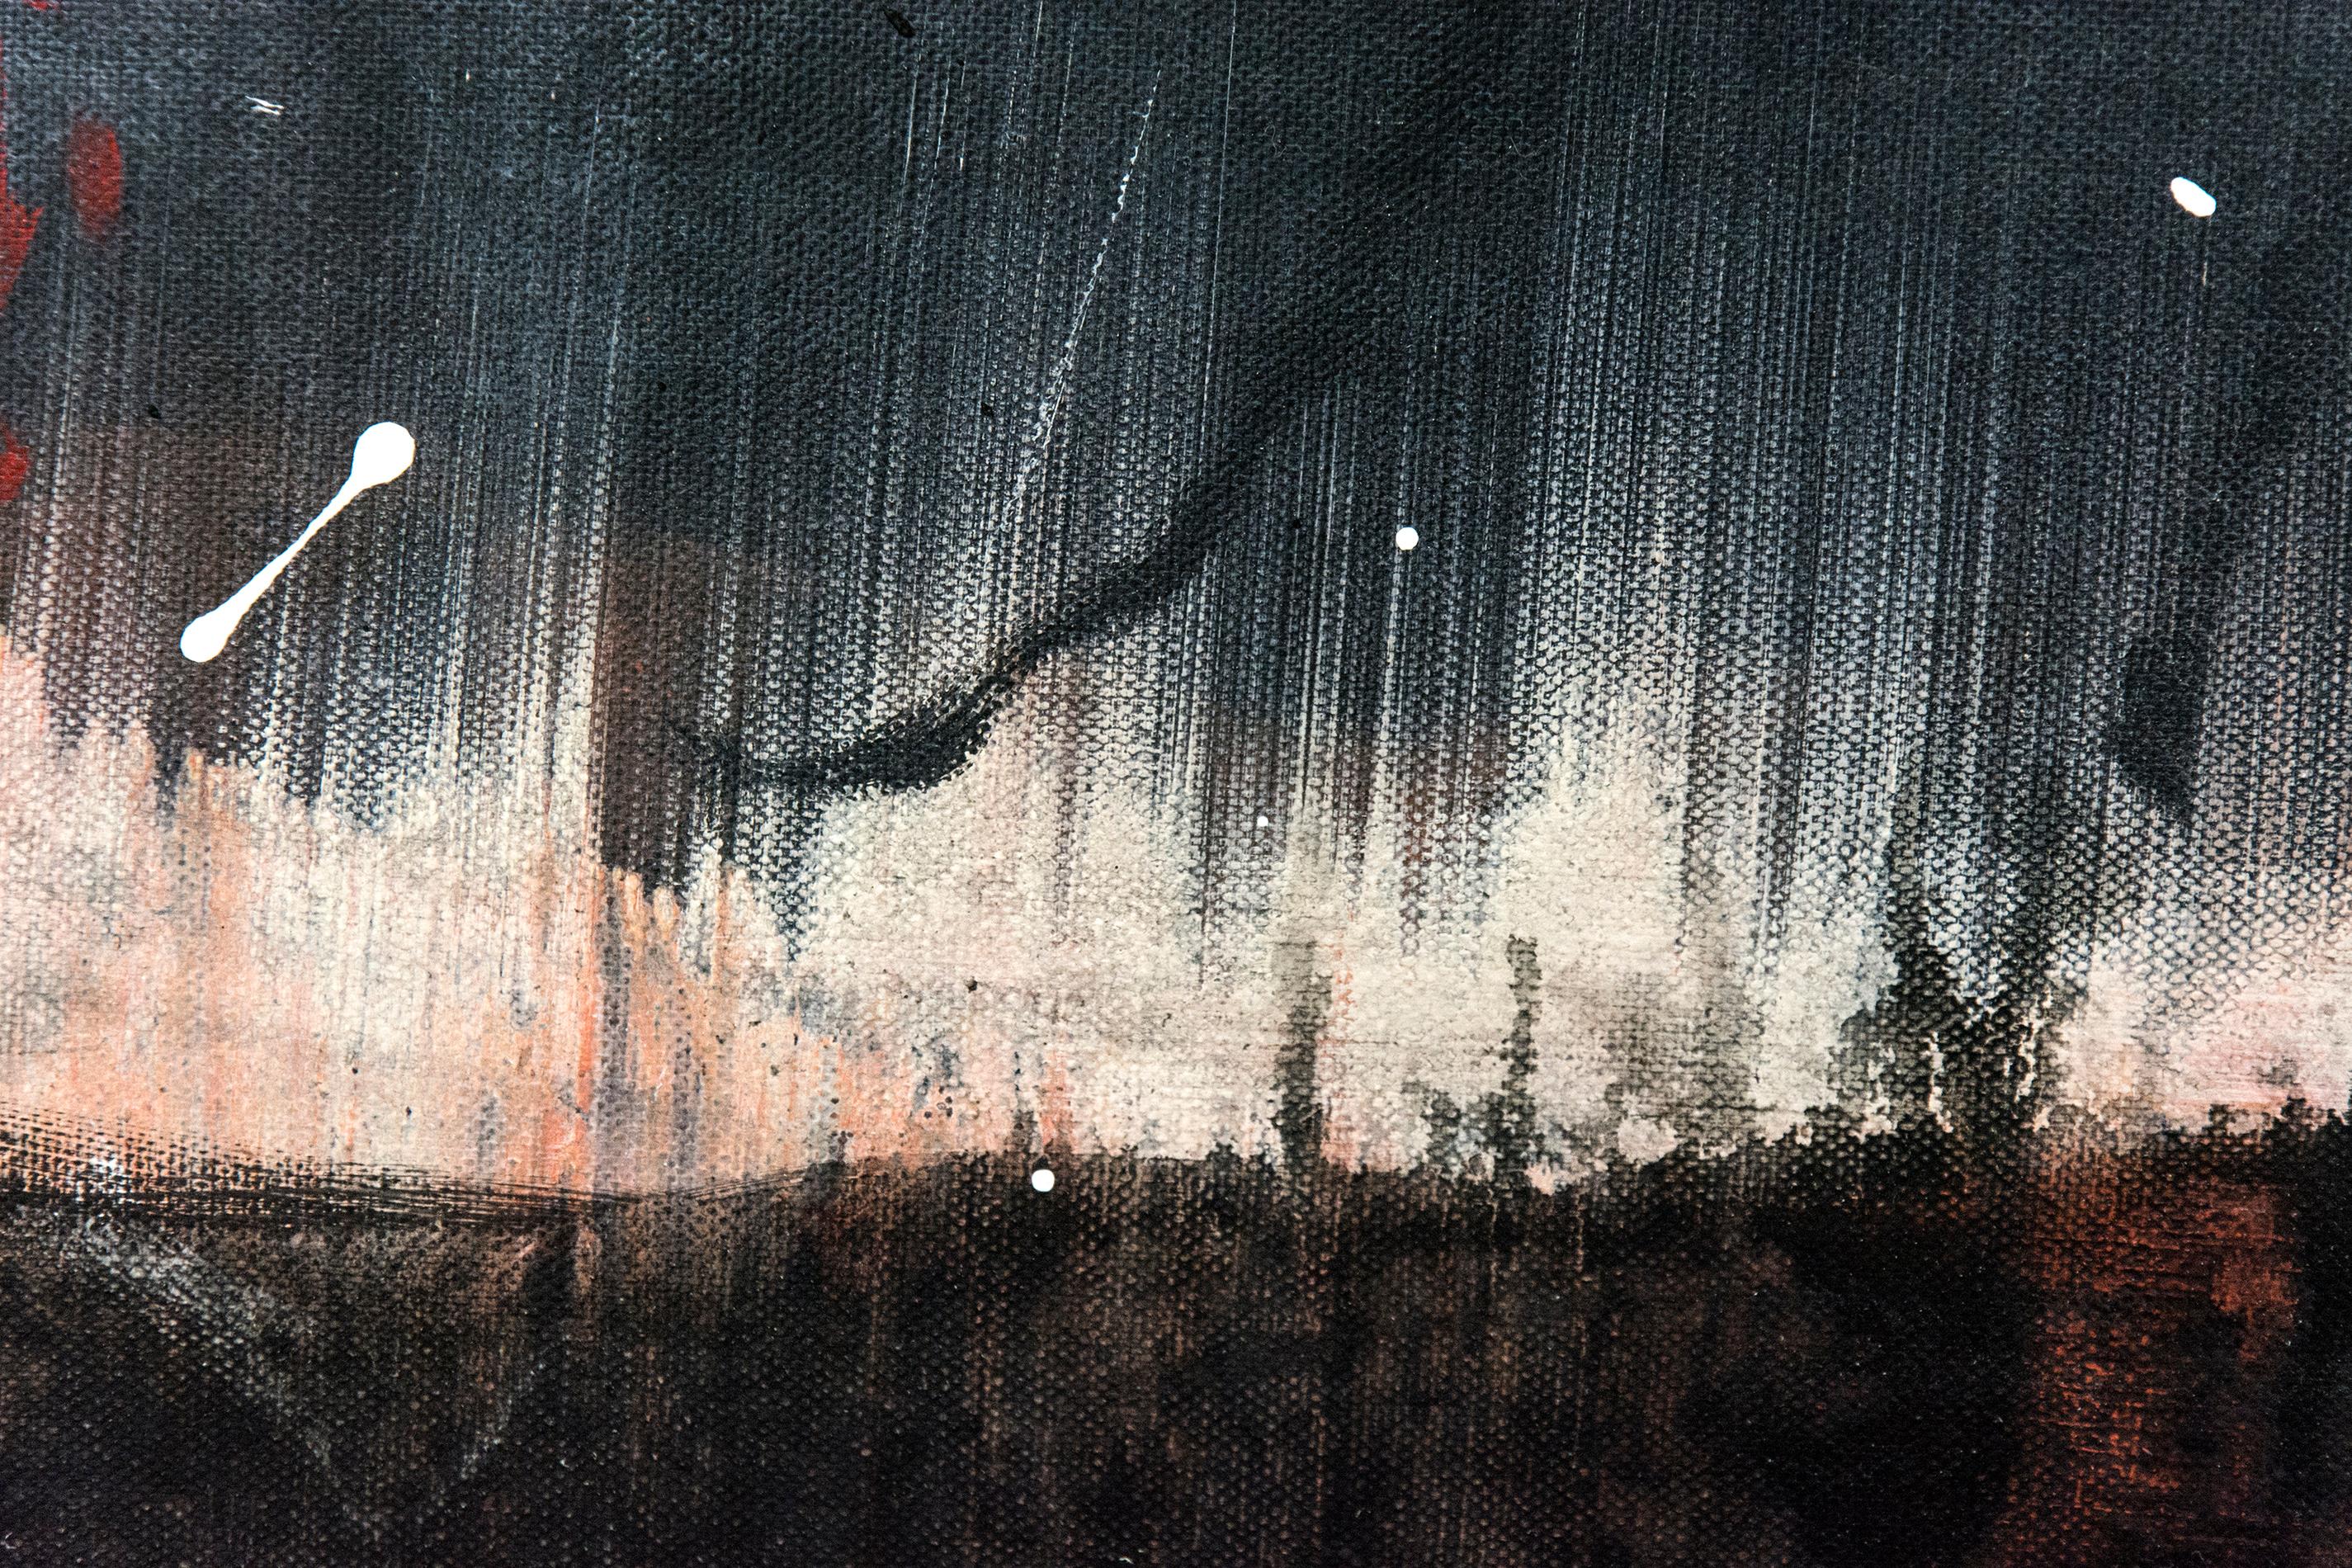 Des touches et des gouttes de peinture illuminent un ciel atmosphérique dans cette acrylique dynamique de Lynne Fernie. L'horizon enflammé ajoute à l'impression de tempête qui se prépare.

Lynne Fernie est une artiste torontoise, diplômée de l'OCAD